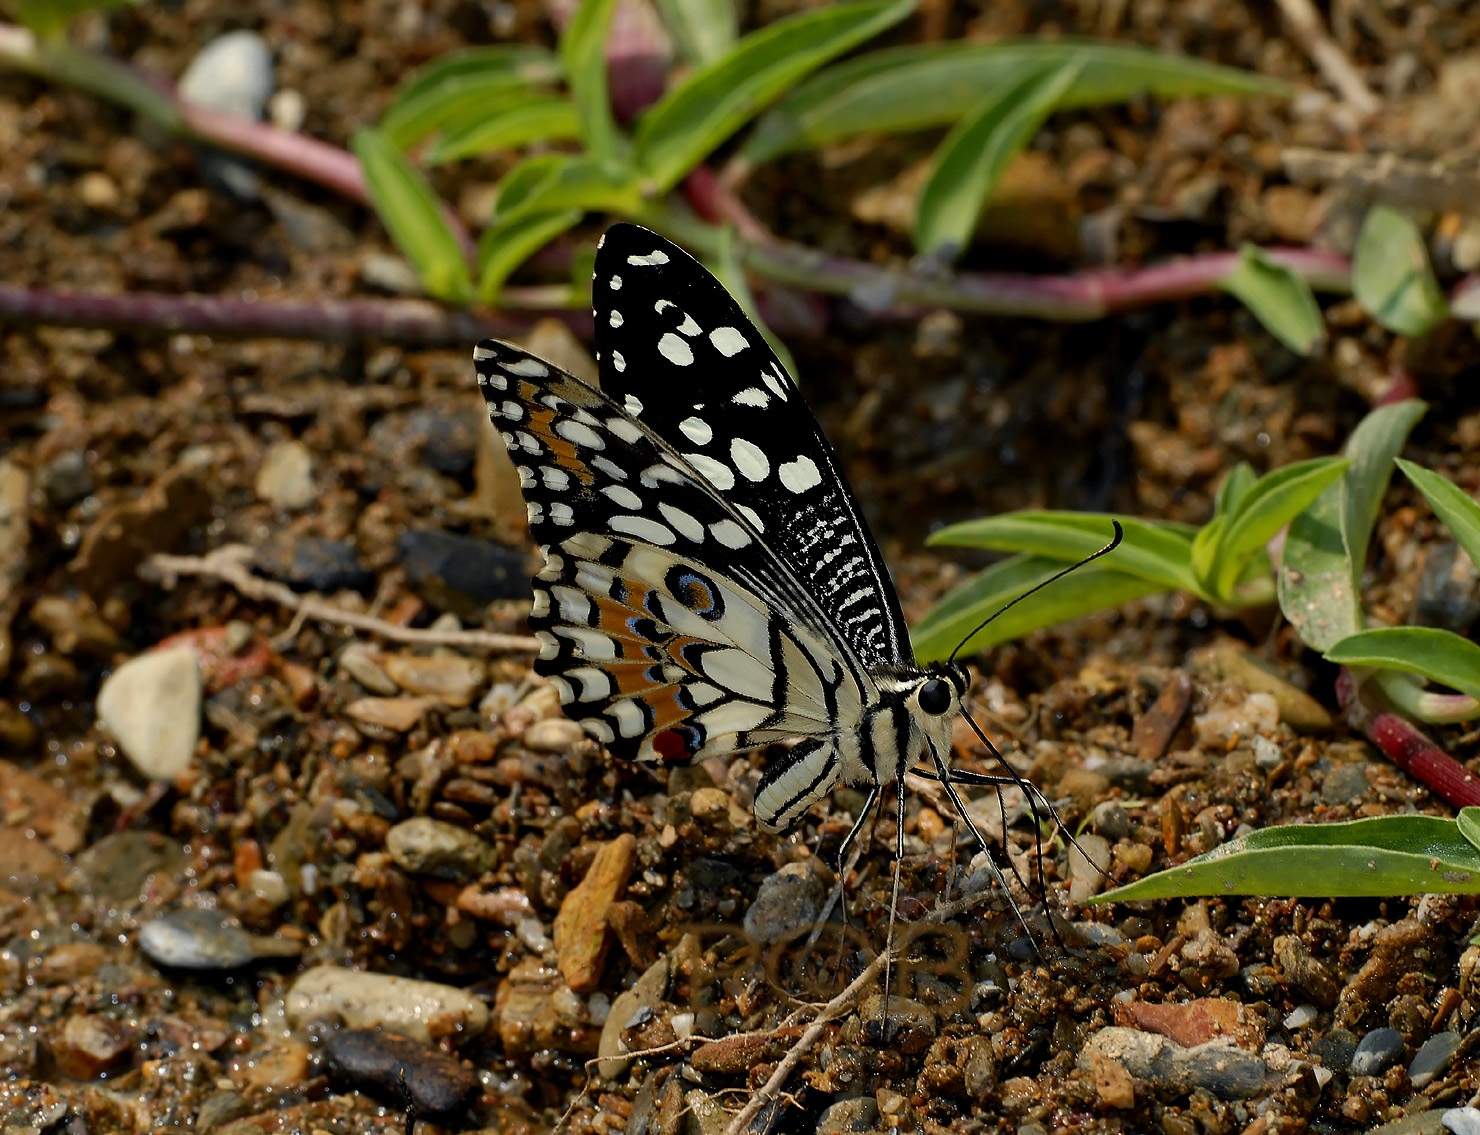 Sucking minerals on the riverbank, Papilio demoleus